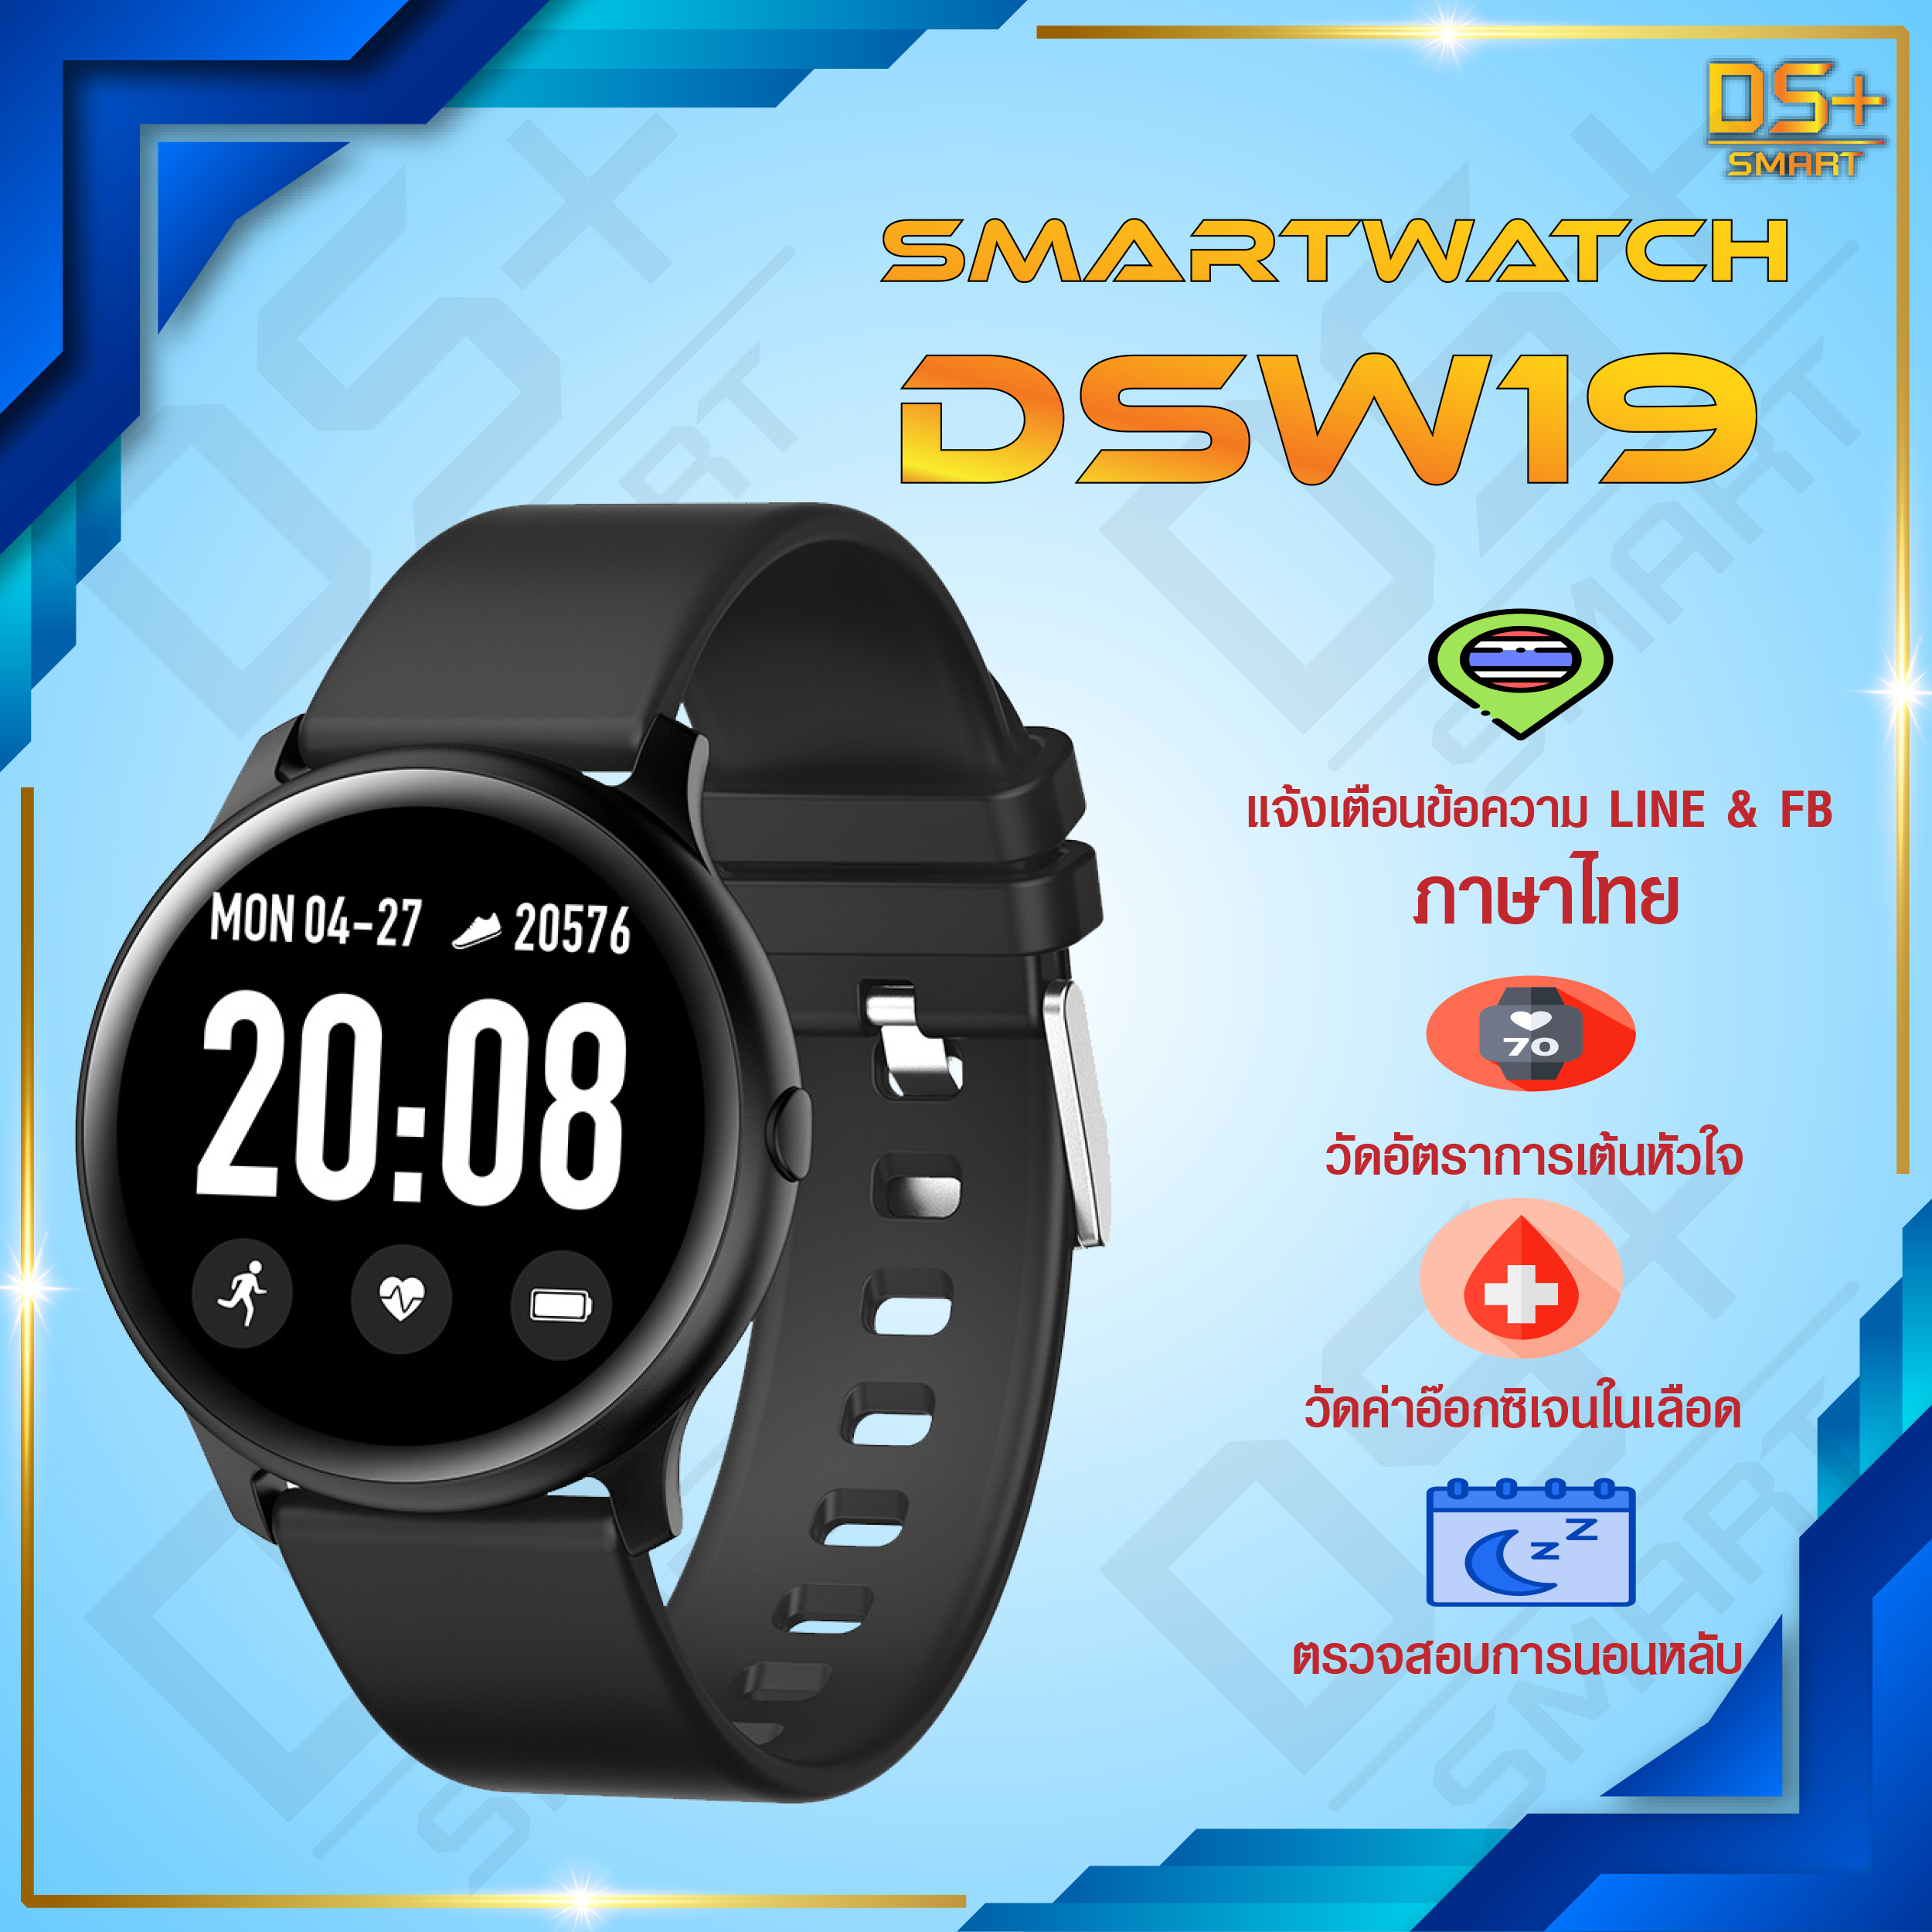 Smart Watch KW19 นาฬิกาสมาร์ทวอทช์ นาฬิกาสมาทวอช นาฬิกาอัจฉริยะ สายรัดข้อมืออัจฉริยะ สายรัดข้อมือเพื่อสุขภาพ นาฬิกาข้อมือ นาฬิกา นาฬิกาแฟชั่น รุ่น DS-KW19 [แจ้งเตือน Line & FB ภาษาไทย] Smart Band Fitness Tracker Smart Bracelet Smart Watch KW19